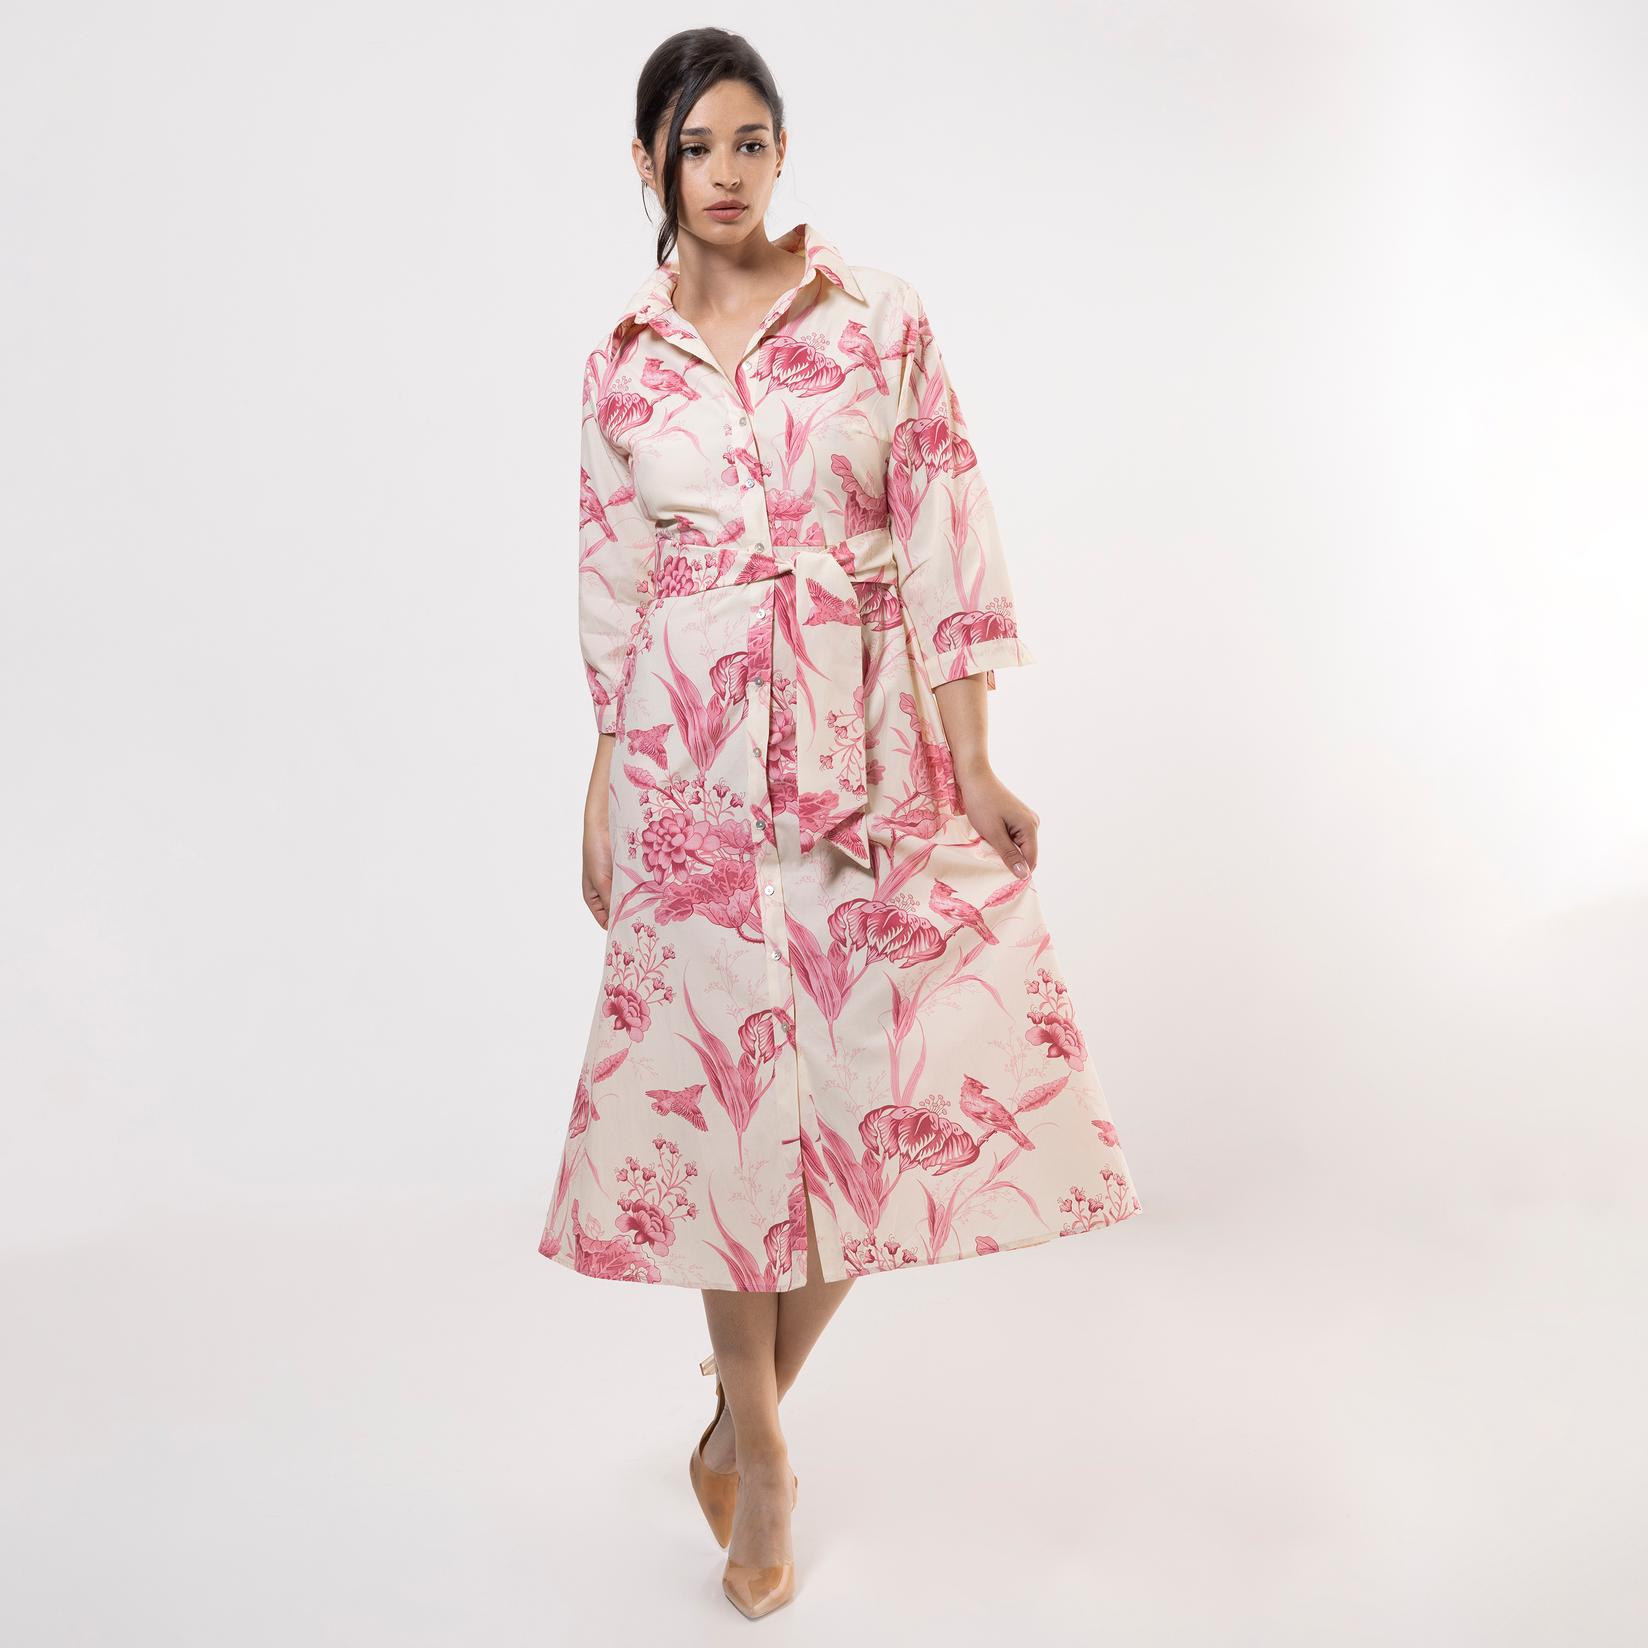 Selected image for FAME Ženska haljina sa cvetovima roze-bela